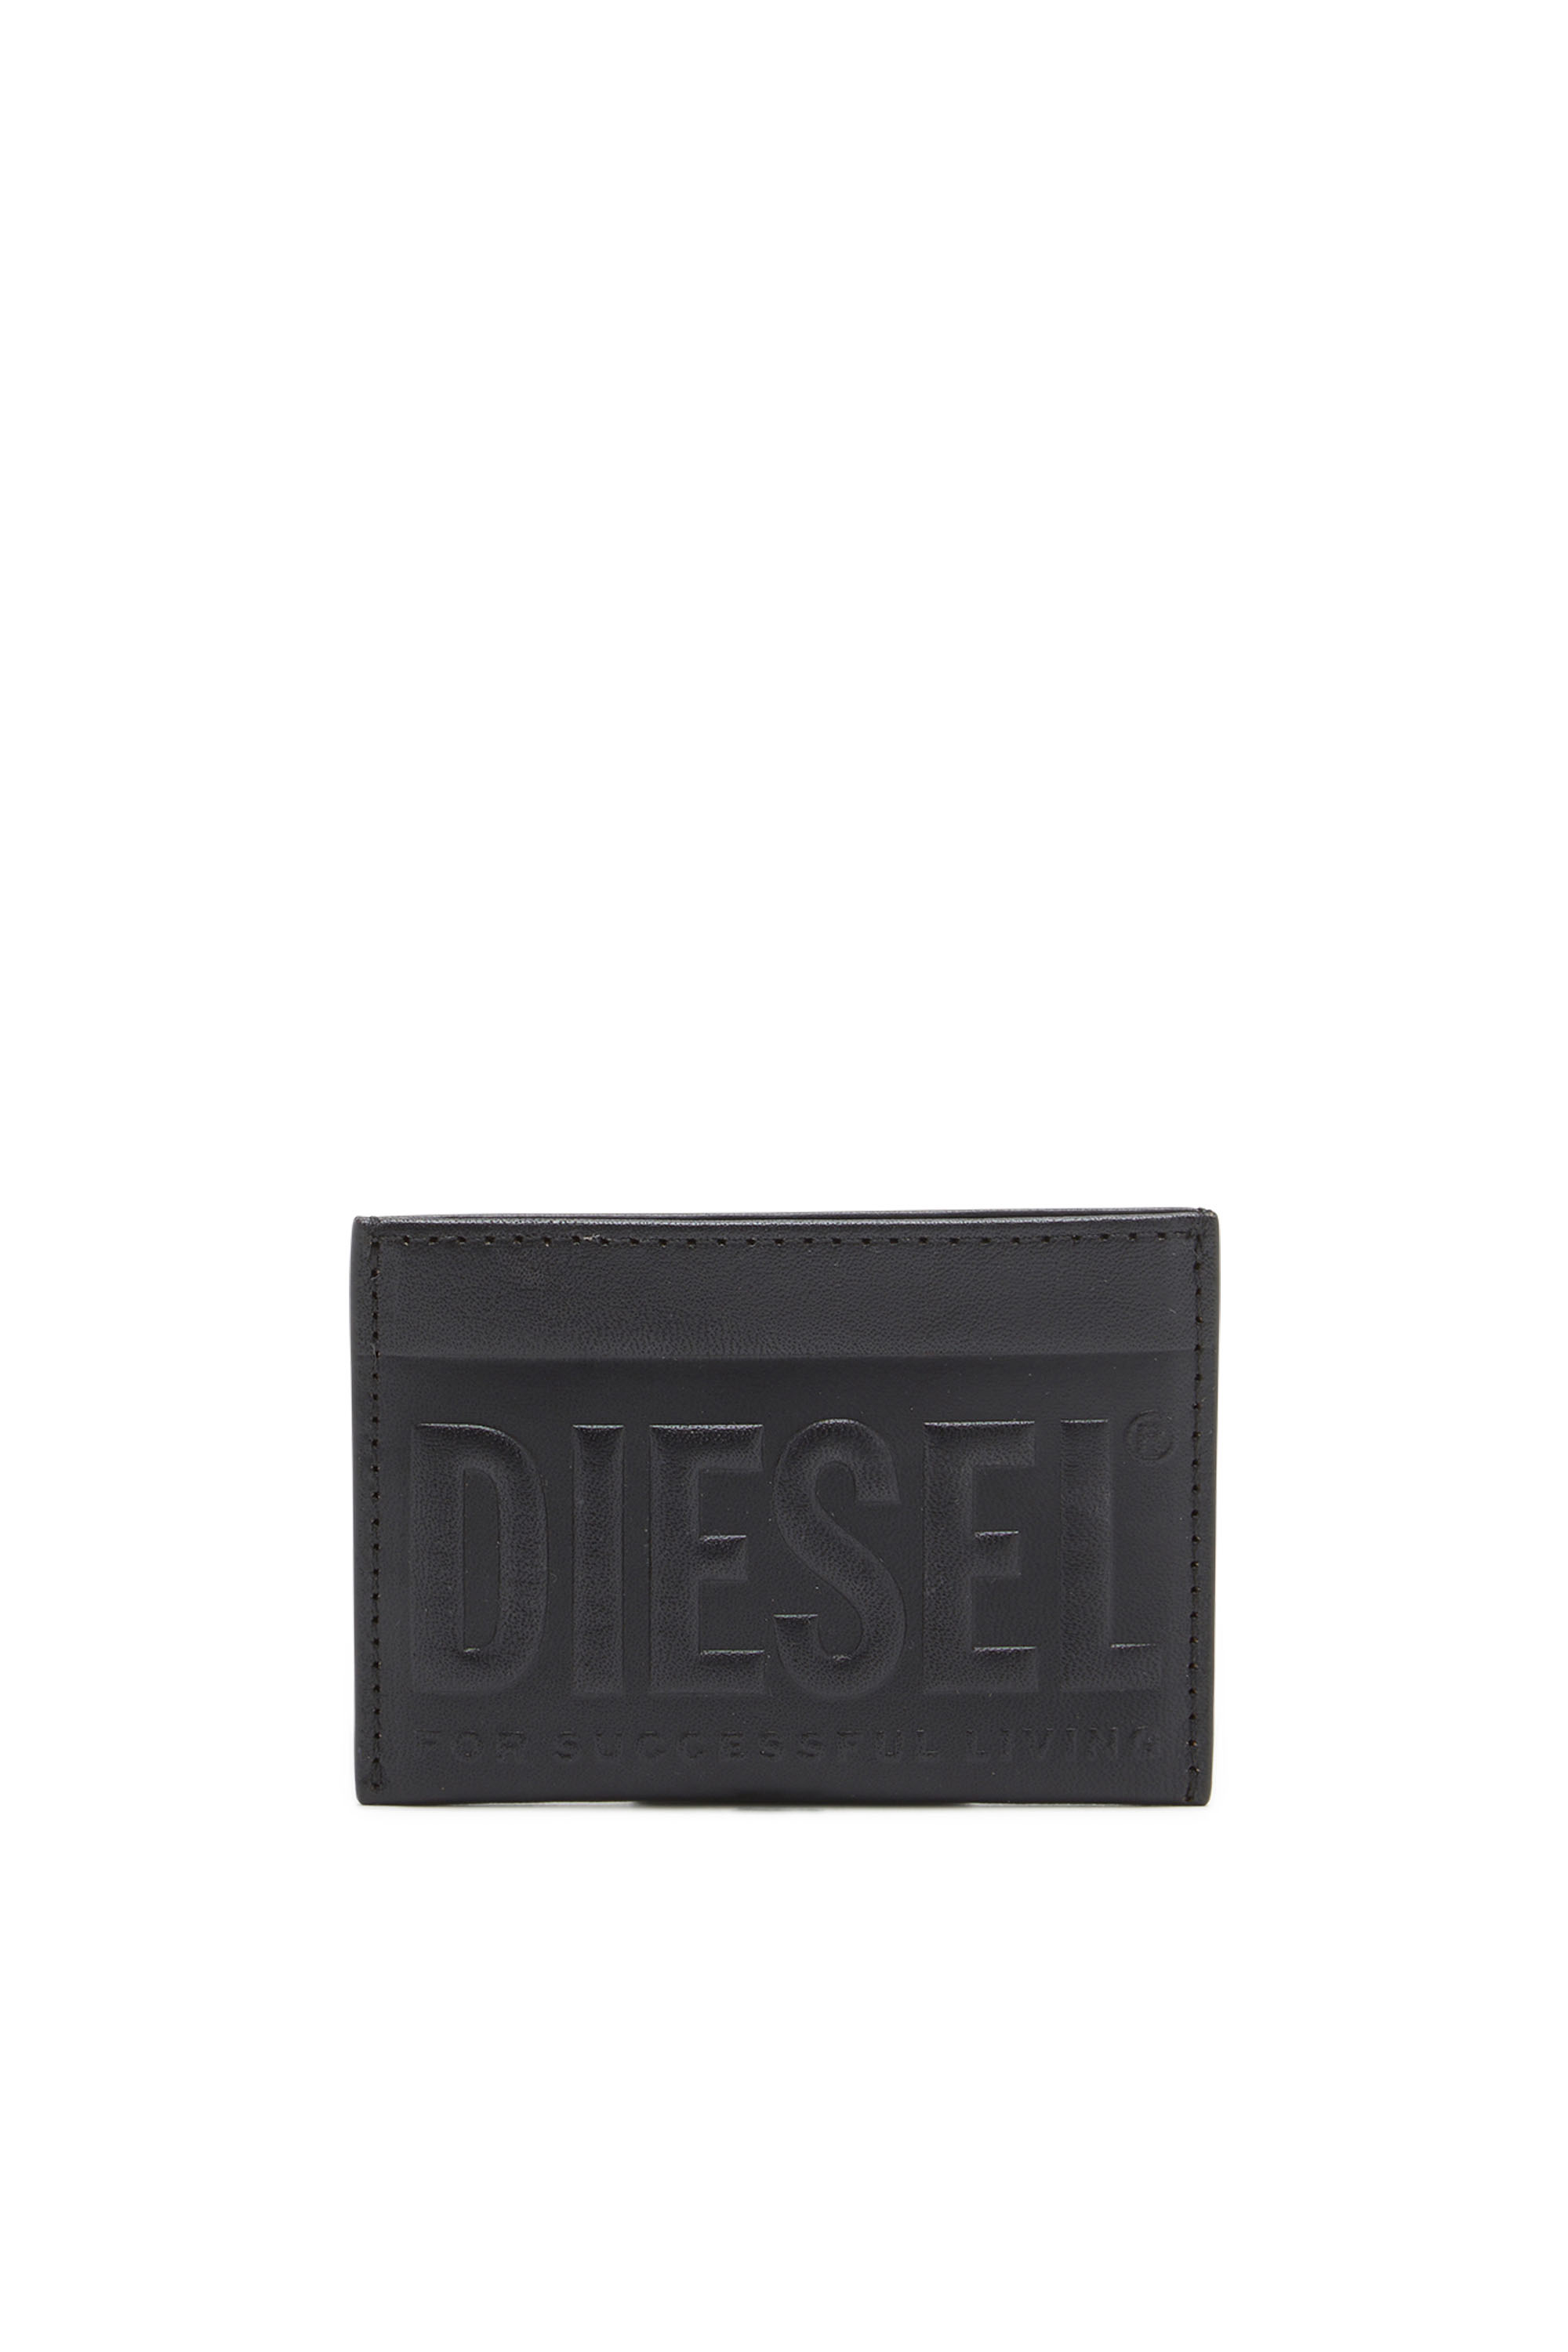 Diesel - Kartenetui aus Leder mit Logo-Prägung - Kleine Portemonnaies - Herren - Schwarz